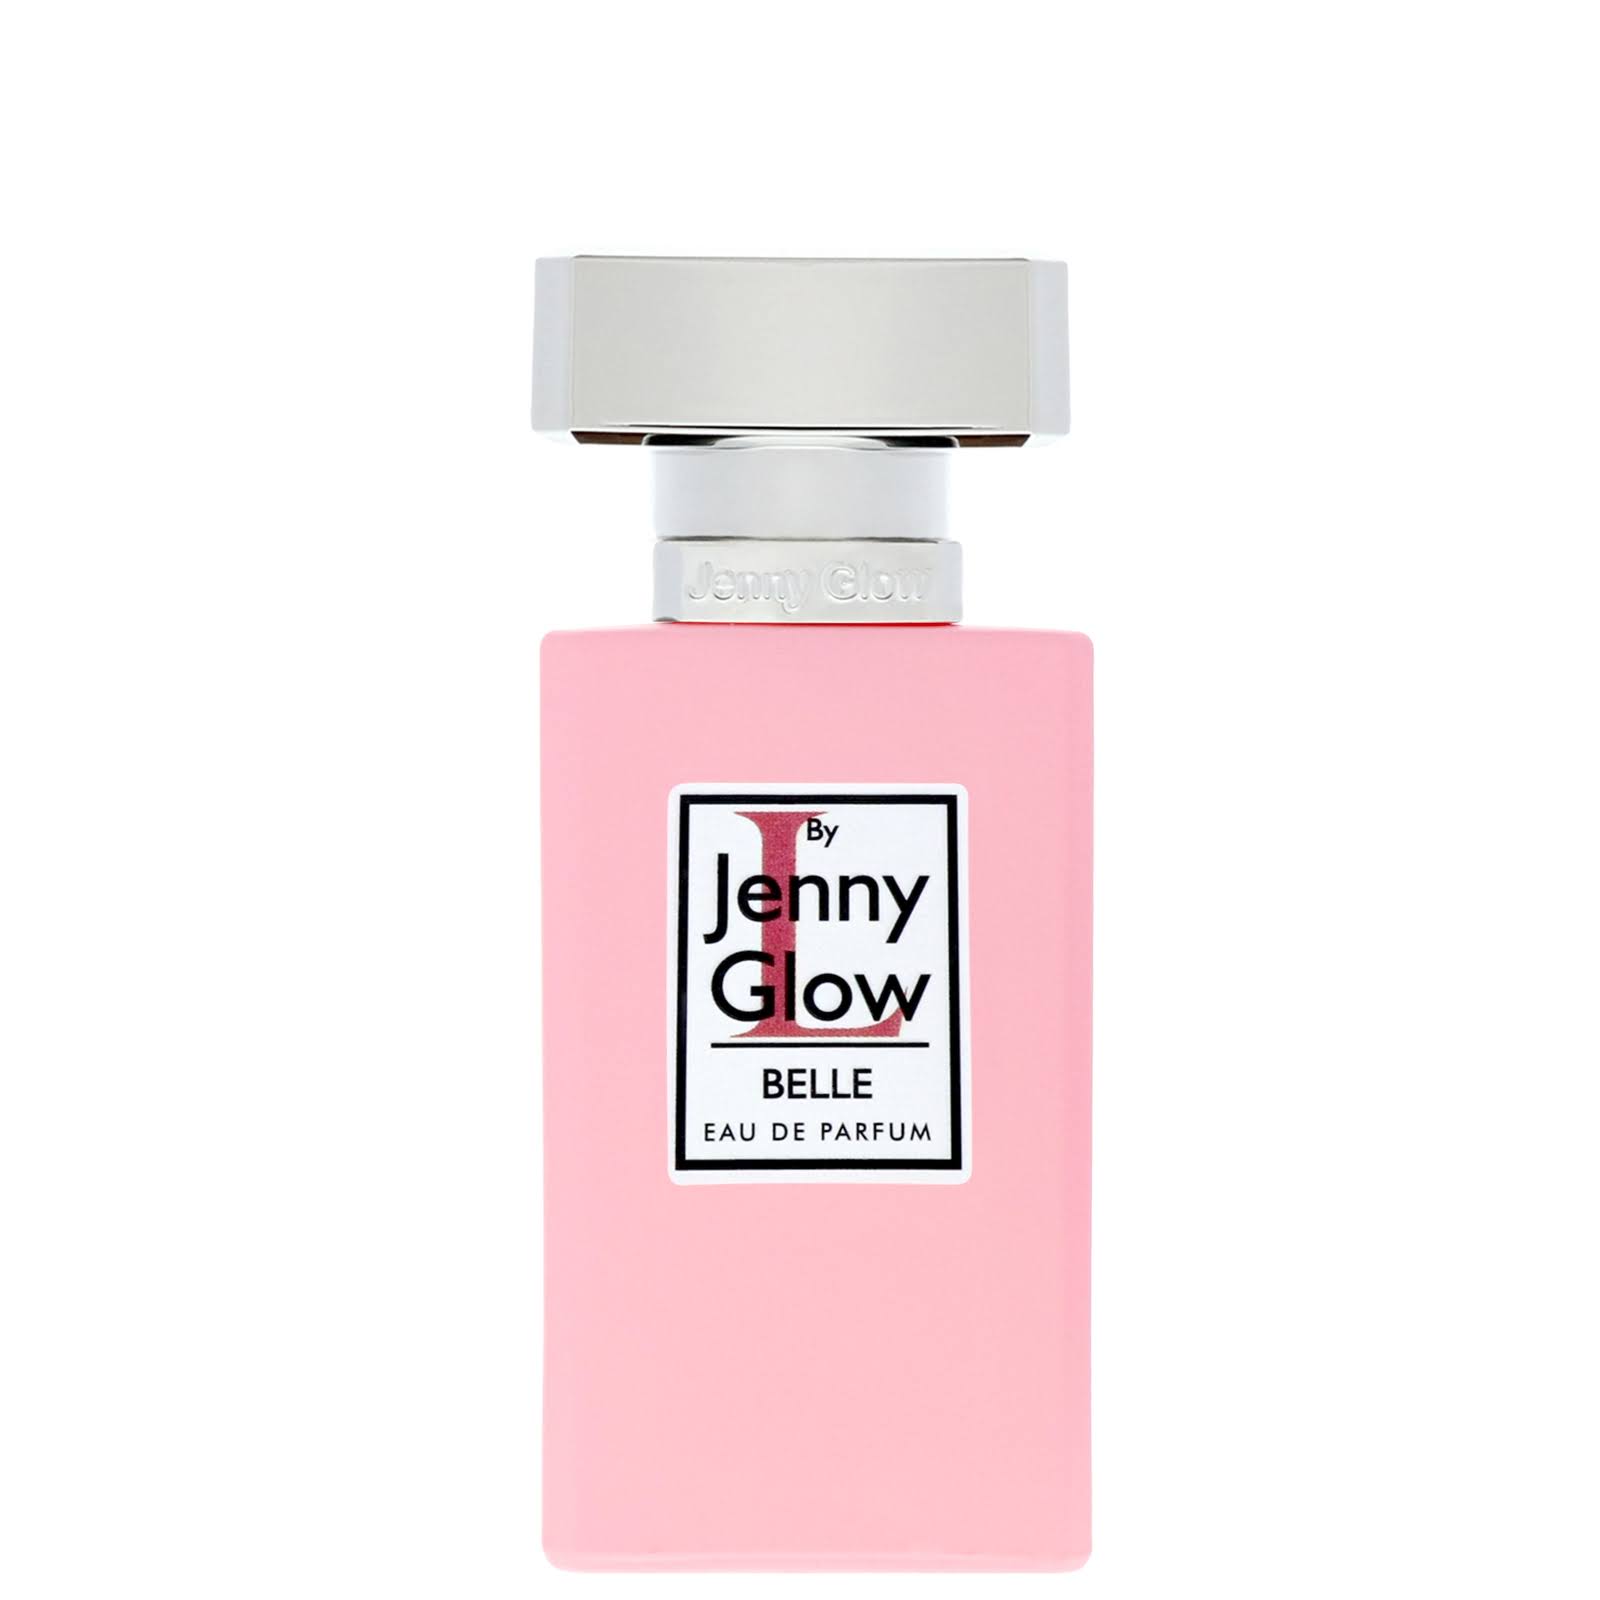 - L by Jenny Glow Belle 30ml Eau de Parfum Spray for Women